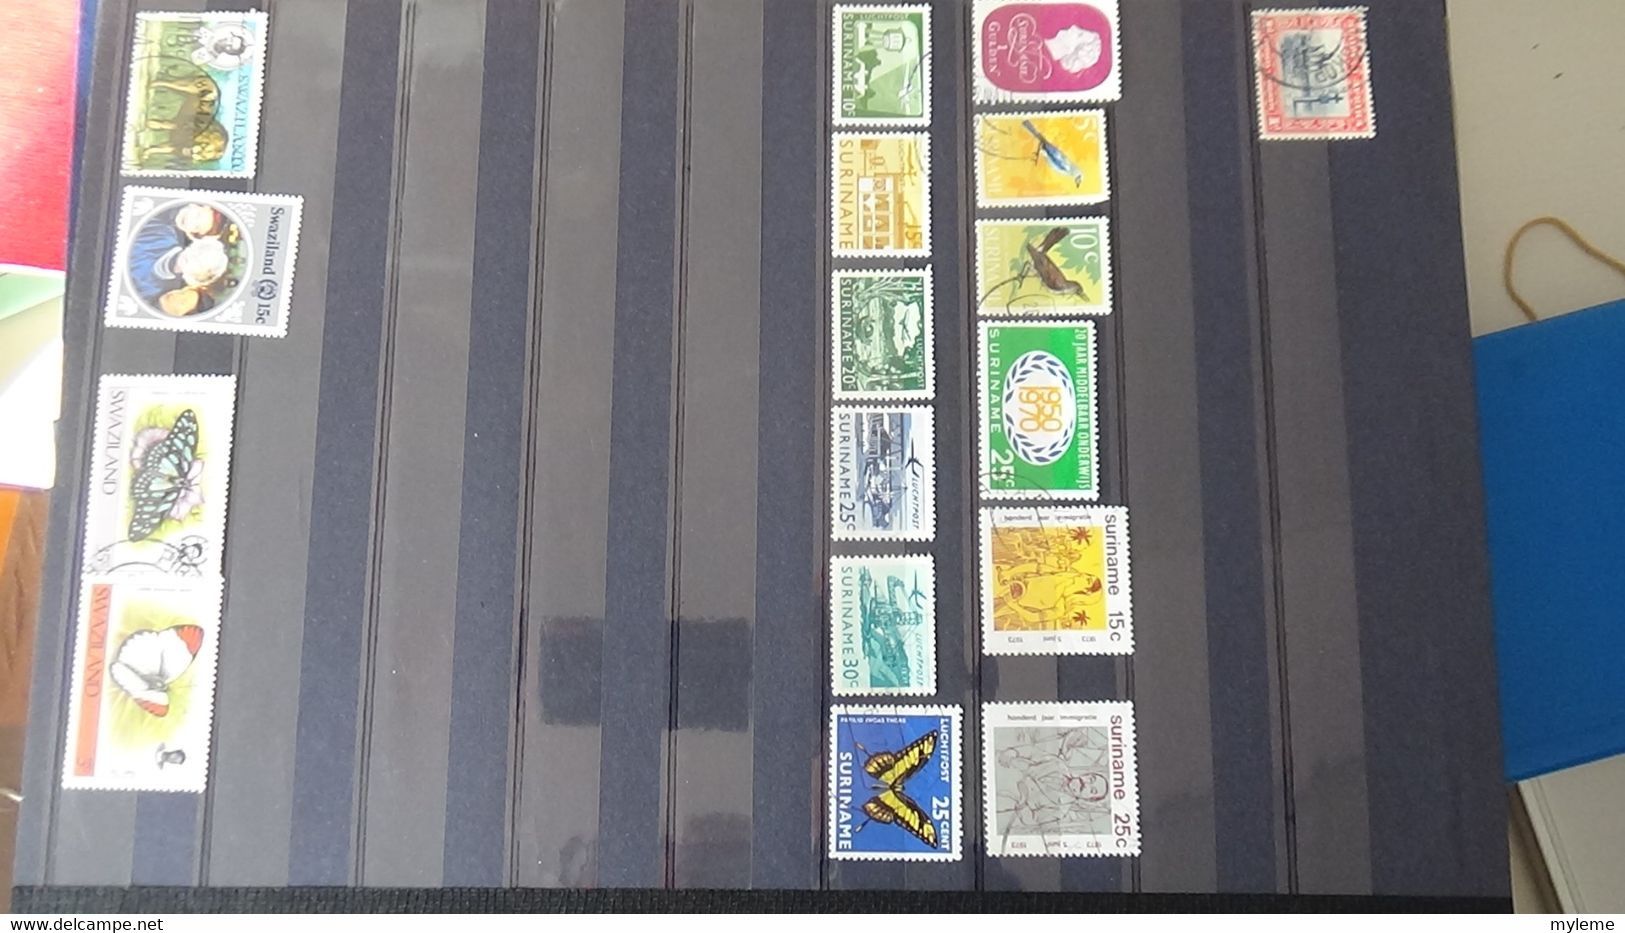 AJ44 Bel ensemble de timbres  de divers pays + France N° 309 + 402 + 424 + 428 ** . Côte 136 euros !!!